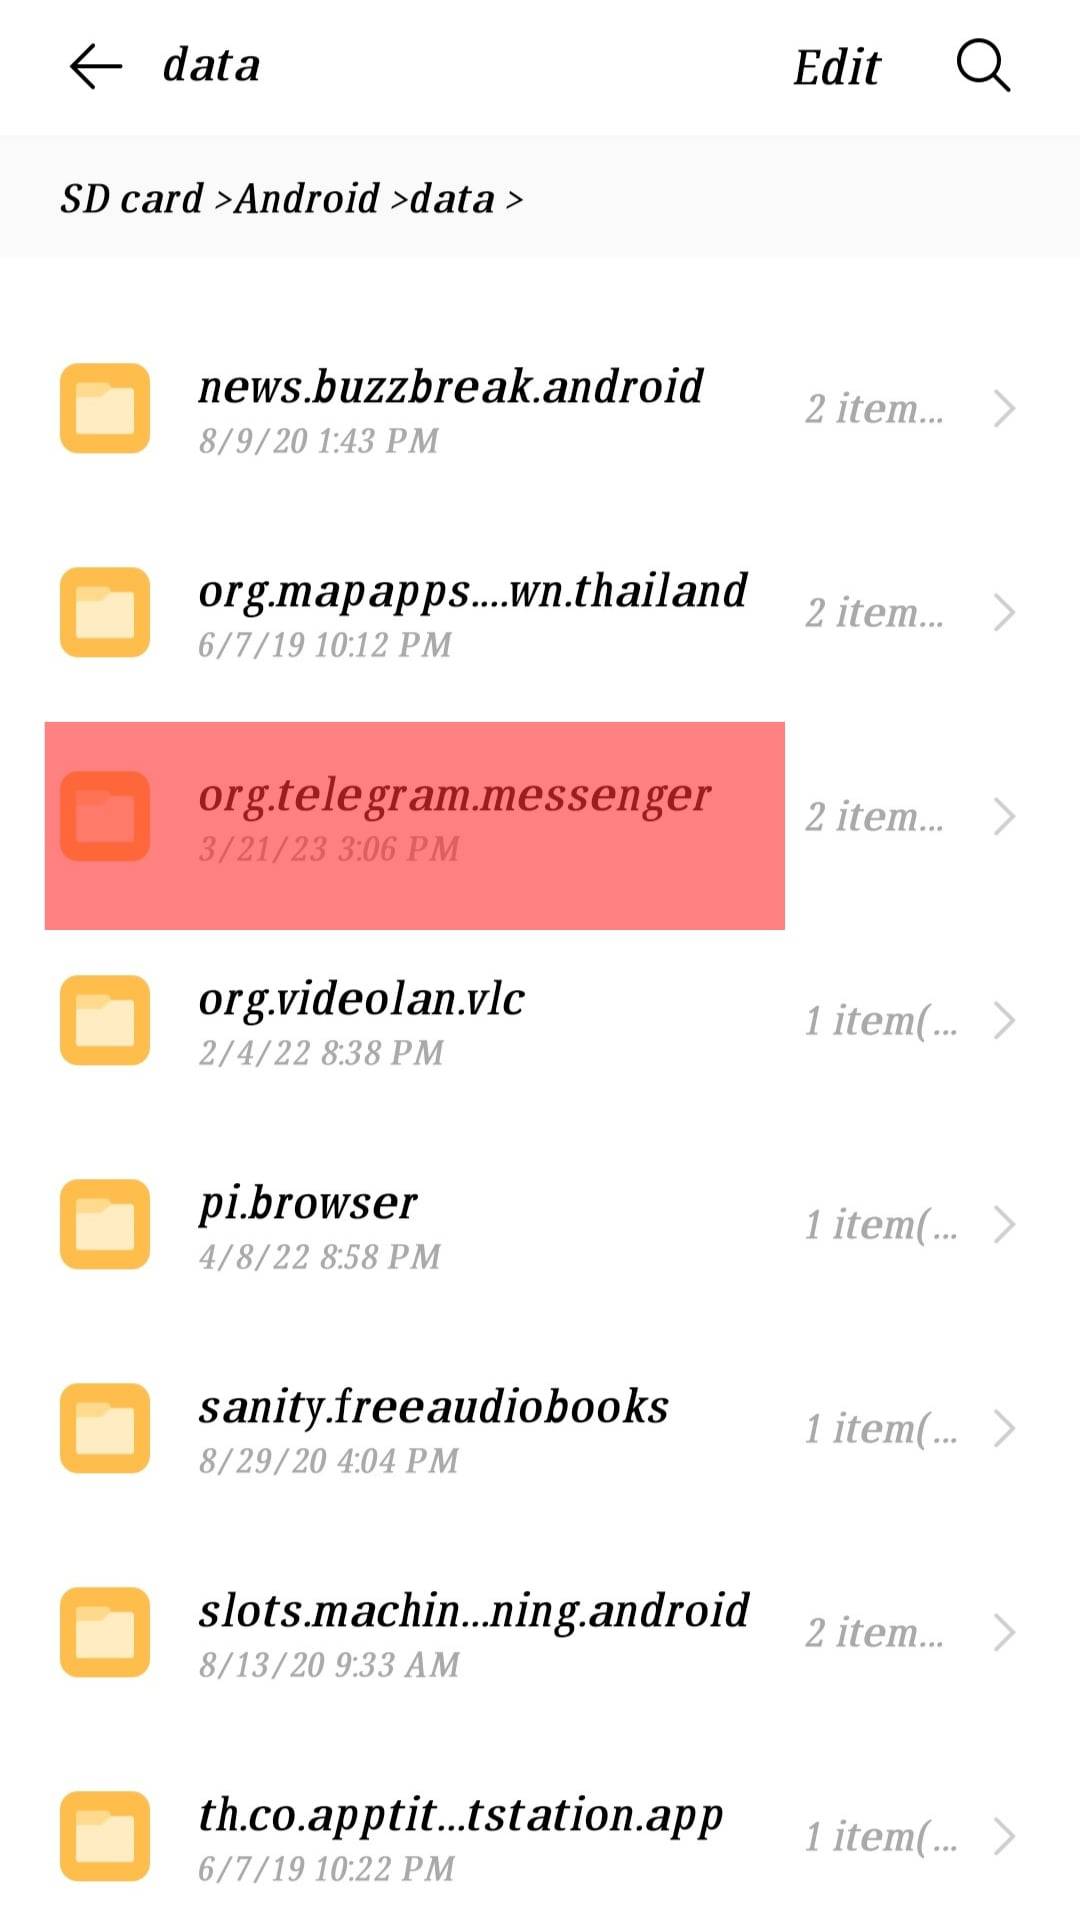 Org.telegram.messenger Folder